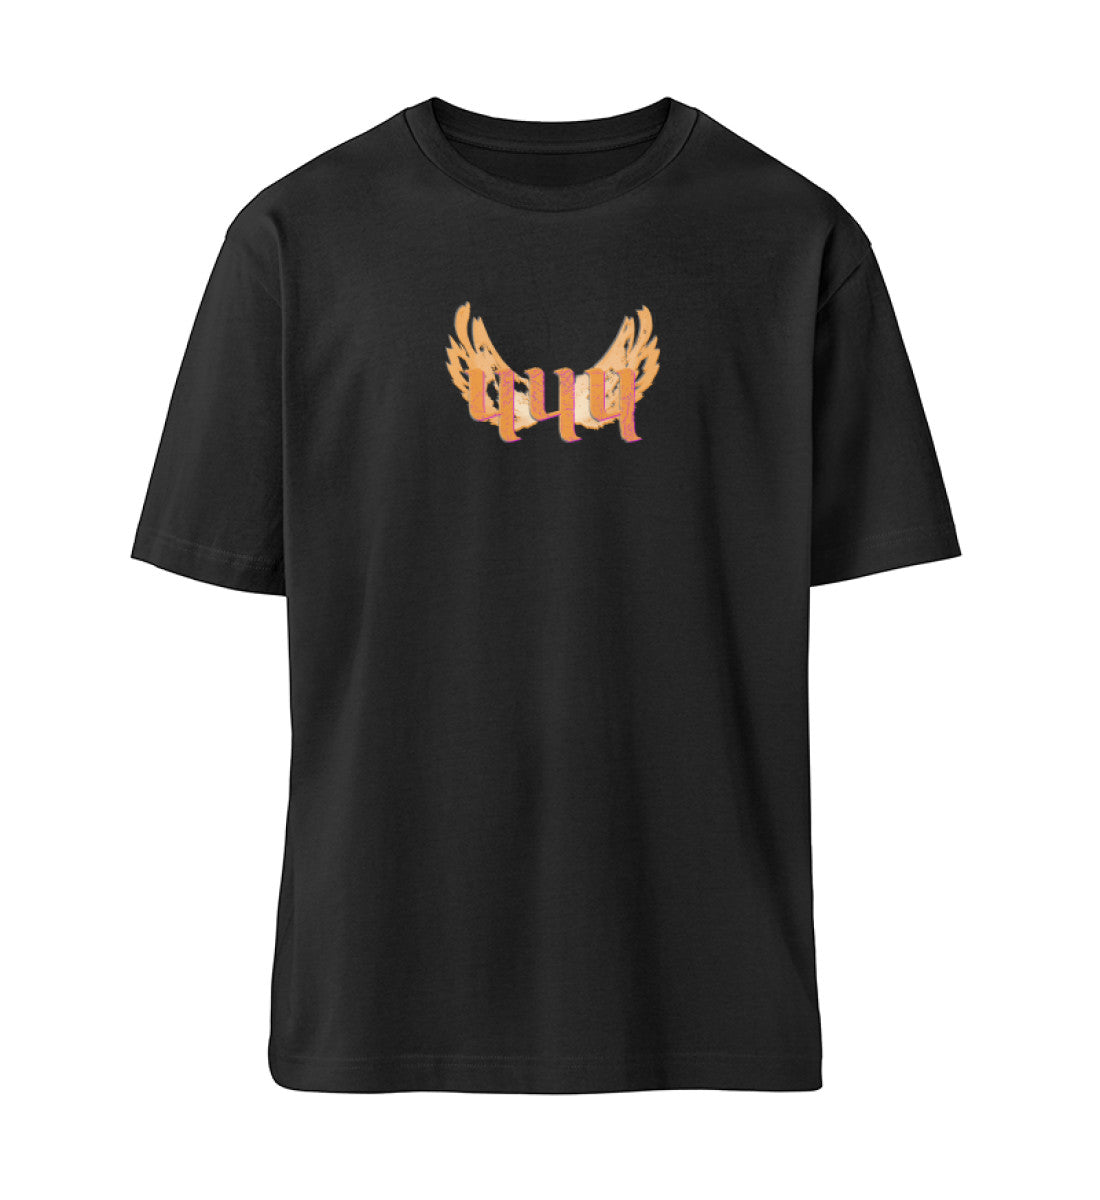 Schwarzes T-Shirt Unisex Relaxed Fit für Frauen und Männer bedruckt mit dem Design der Roger Rockawoo Kollektion Engelszahl 444